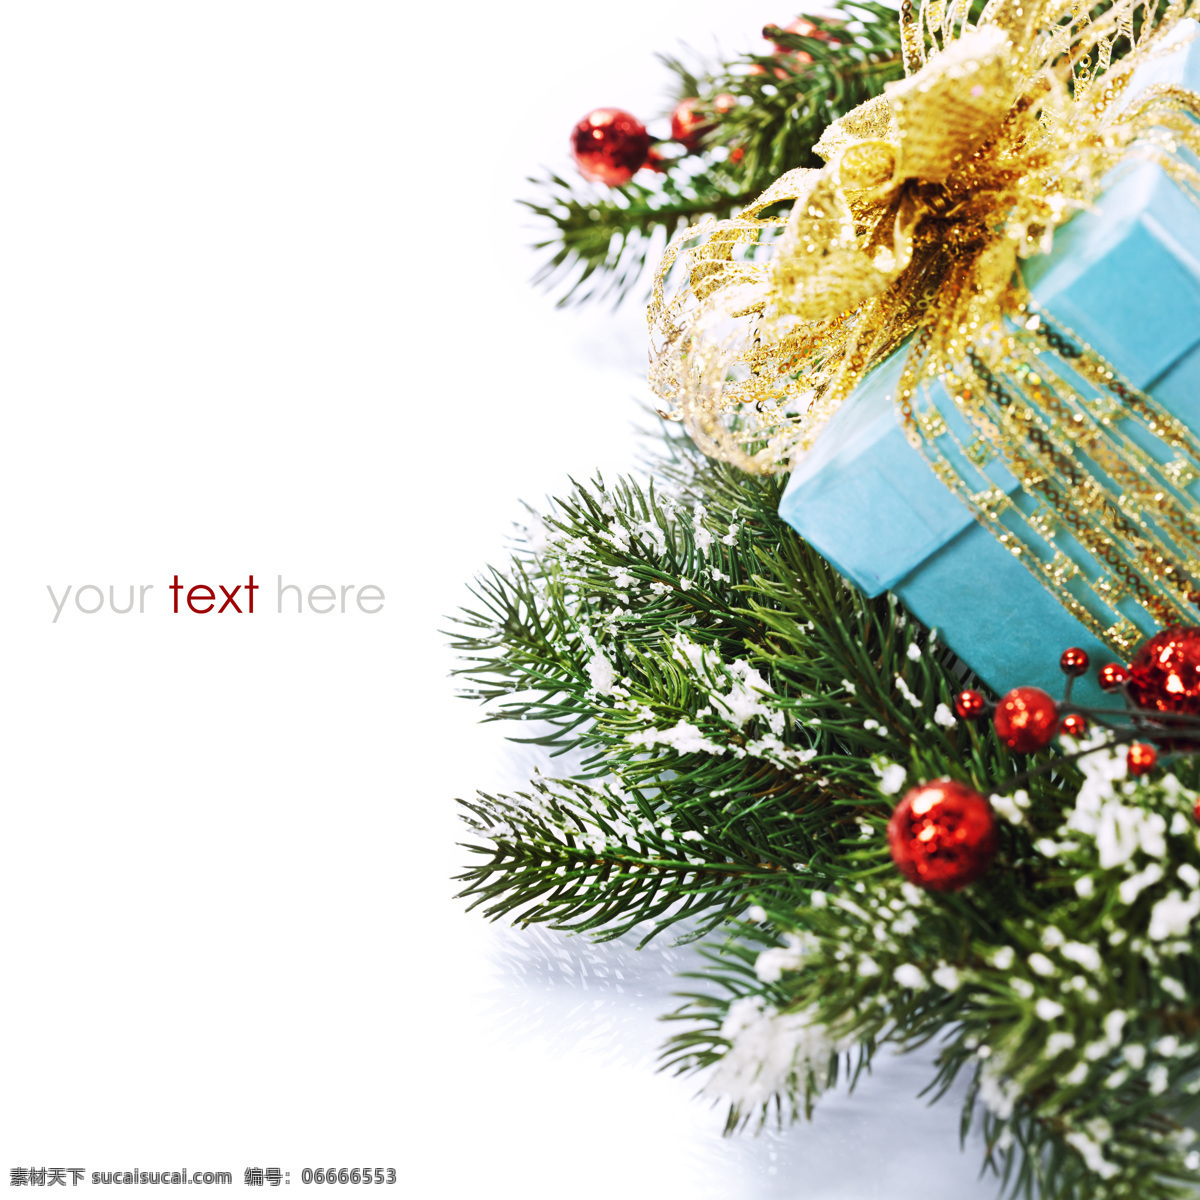 松树枝 礼物 盒 背景 素材图片 礼物盒 圣诞彩球 圣诞物品 背景素材 节日庆典 生活百科